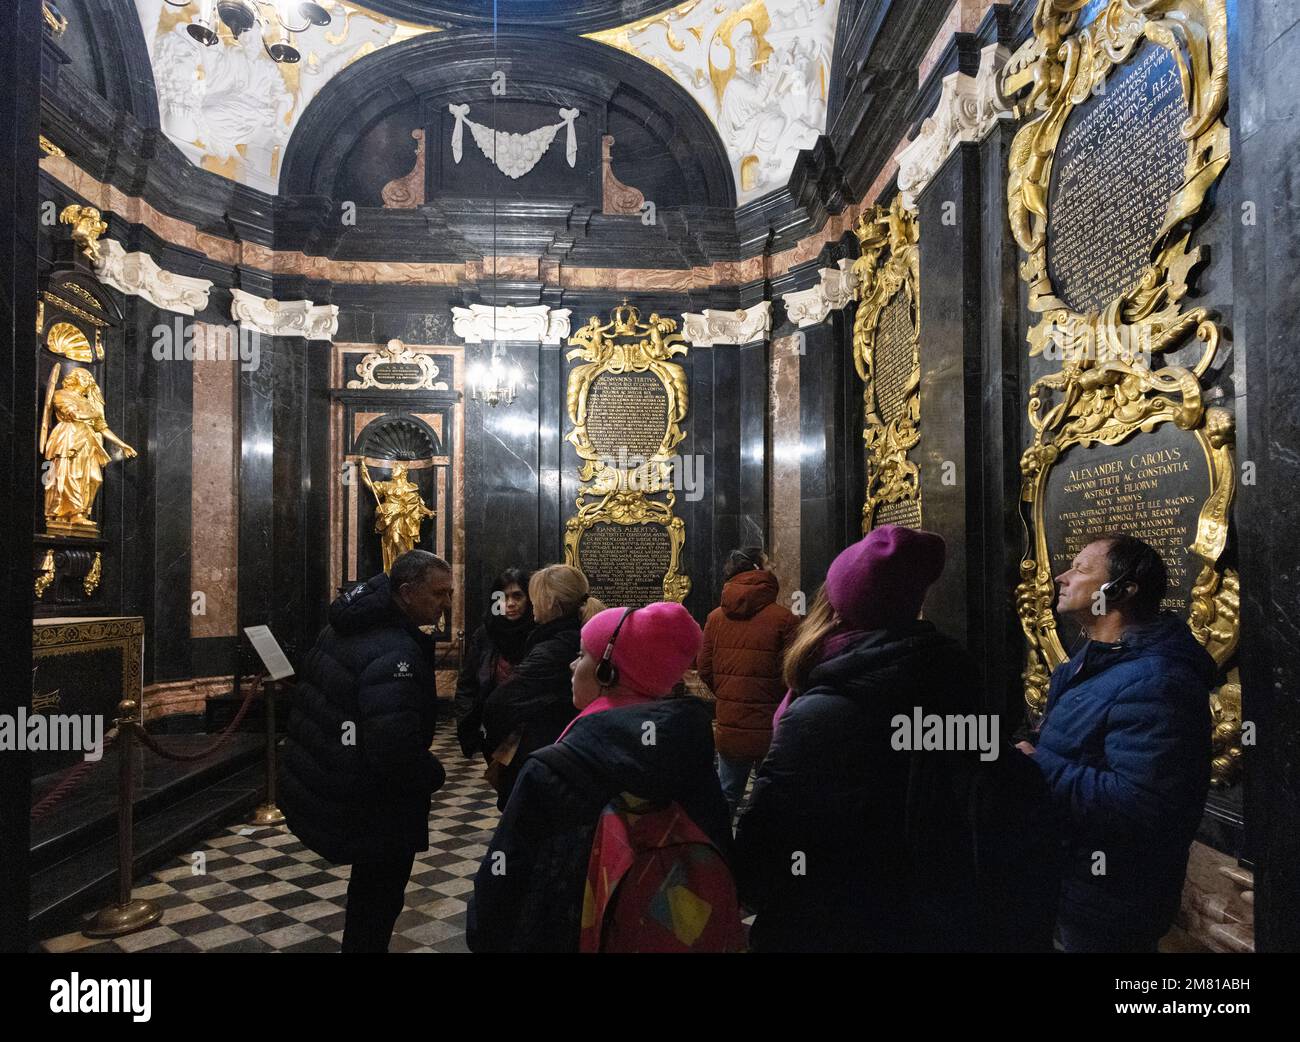 Krakauer Tourismus; eine Gruppe von Touristen auf einer Führung durch das Innere der Wawel-Kathedrale, in der prunkvollen Vasa-Kapelle, der Wawel-Kathedrale, der Krakauer Altstadt, Polen Stockfoto